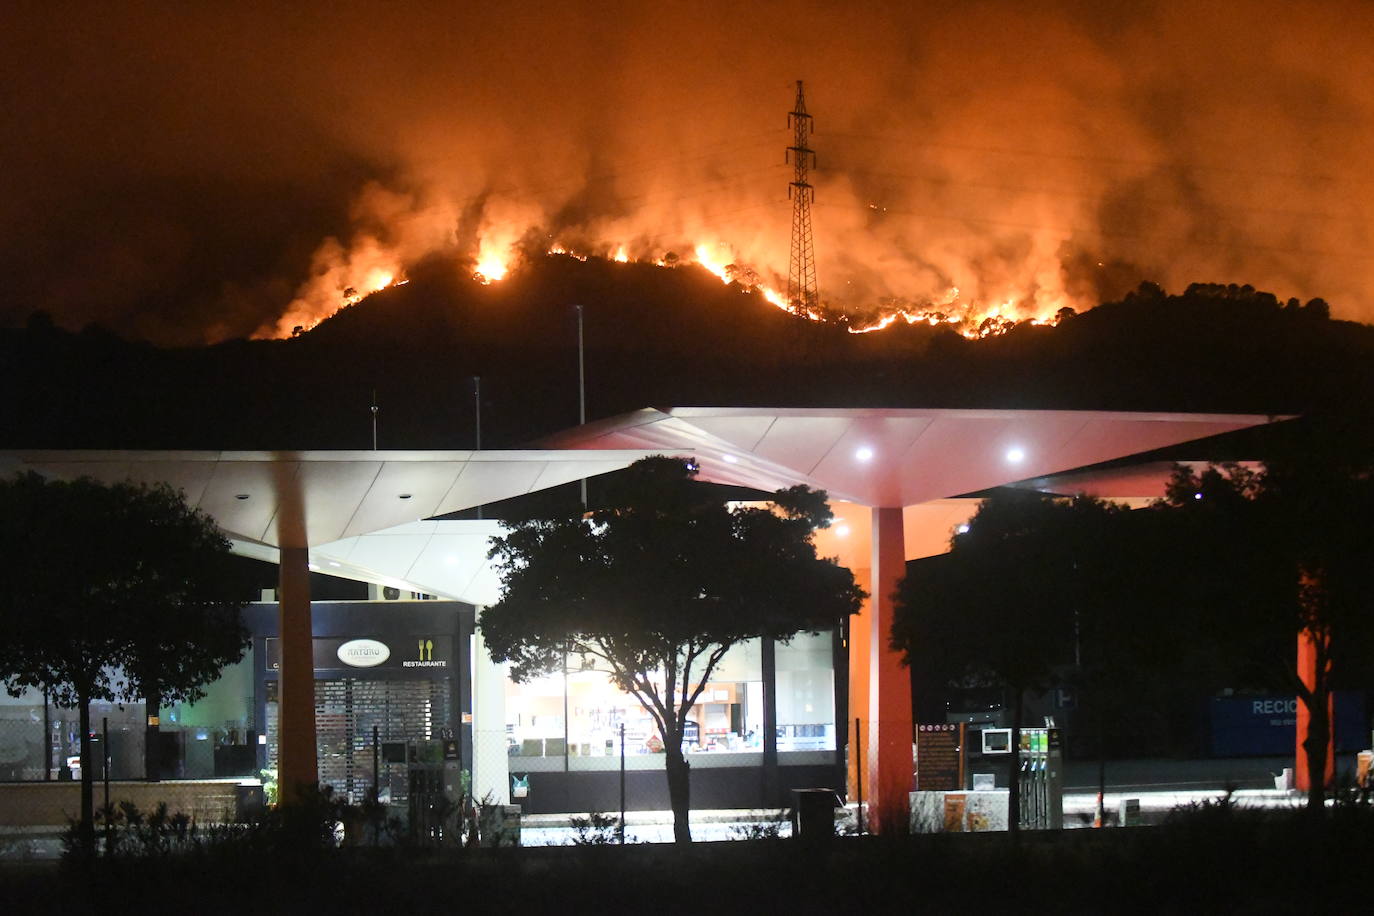 Imagen secundaria 2 - El incendio de Estepona ha calcinado ya 300 hectáreas pero algunos vecinos ya regresan a sus casas